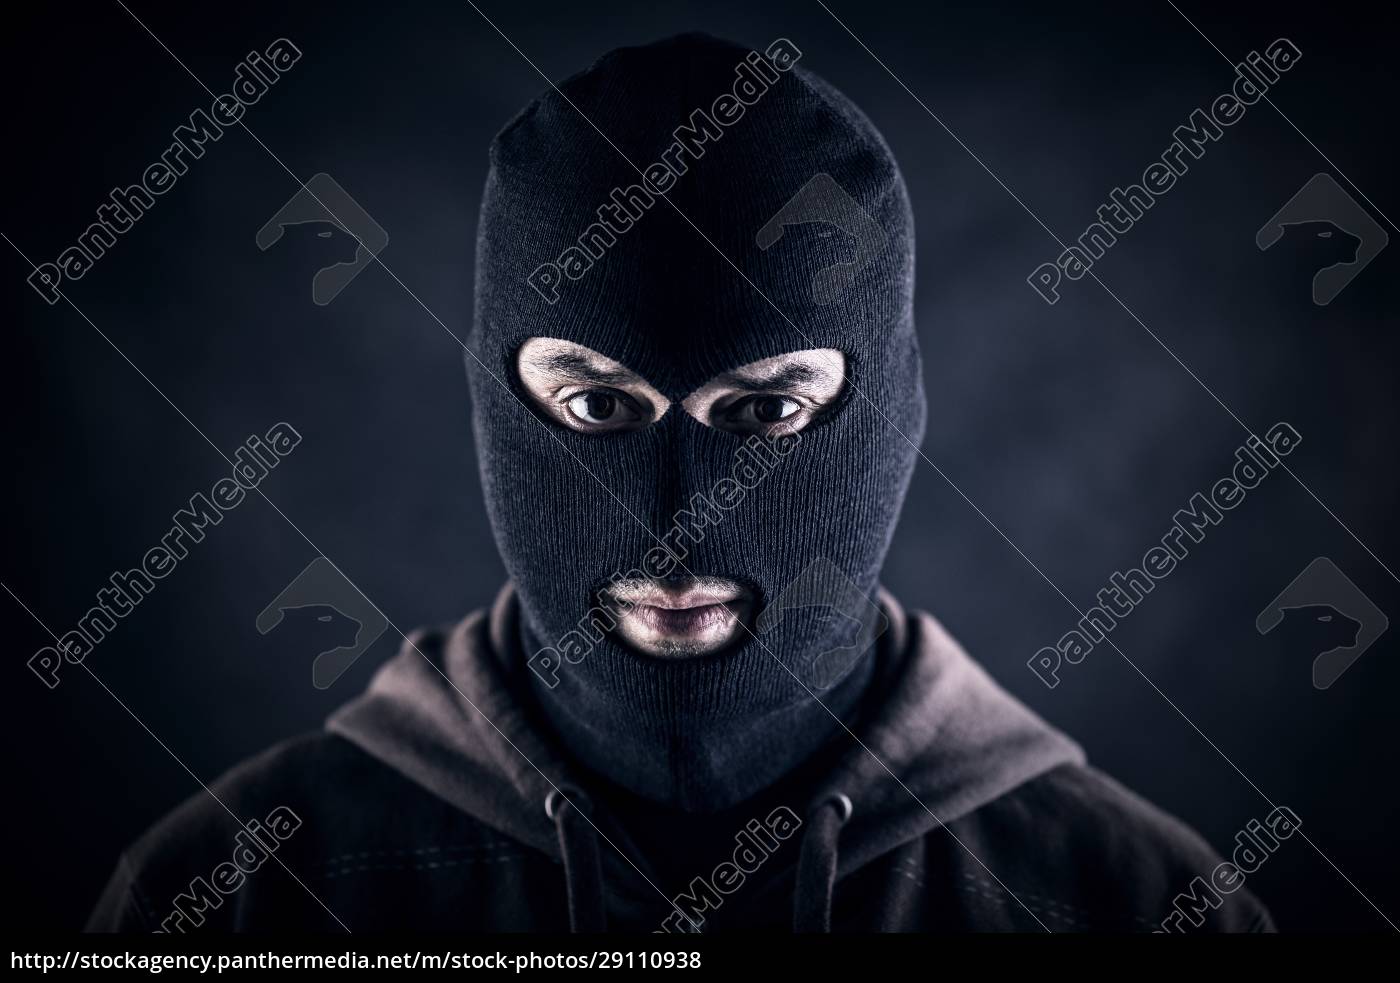 Criminale che indossa passamontagna nero e felpa con - Stockphoto #29110938